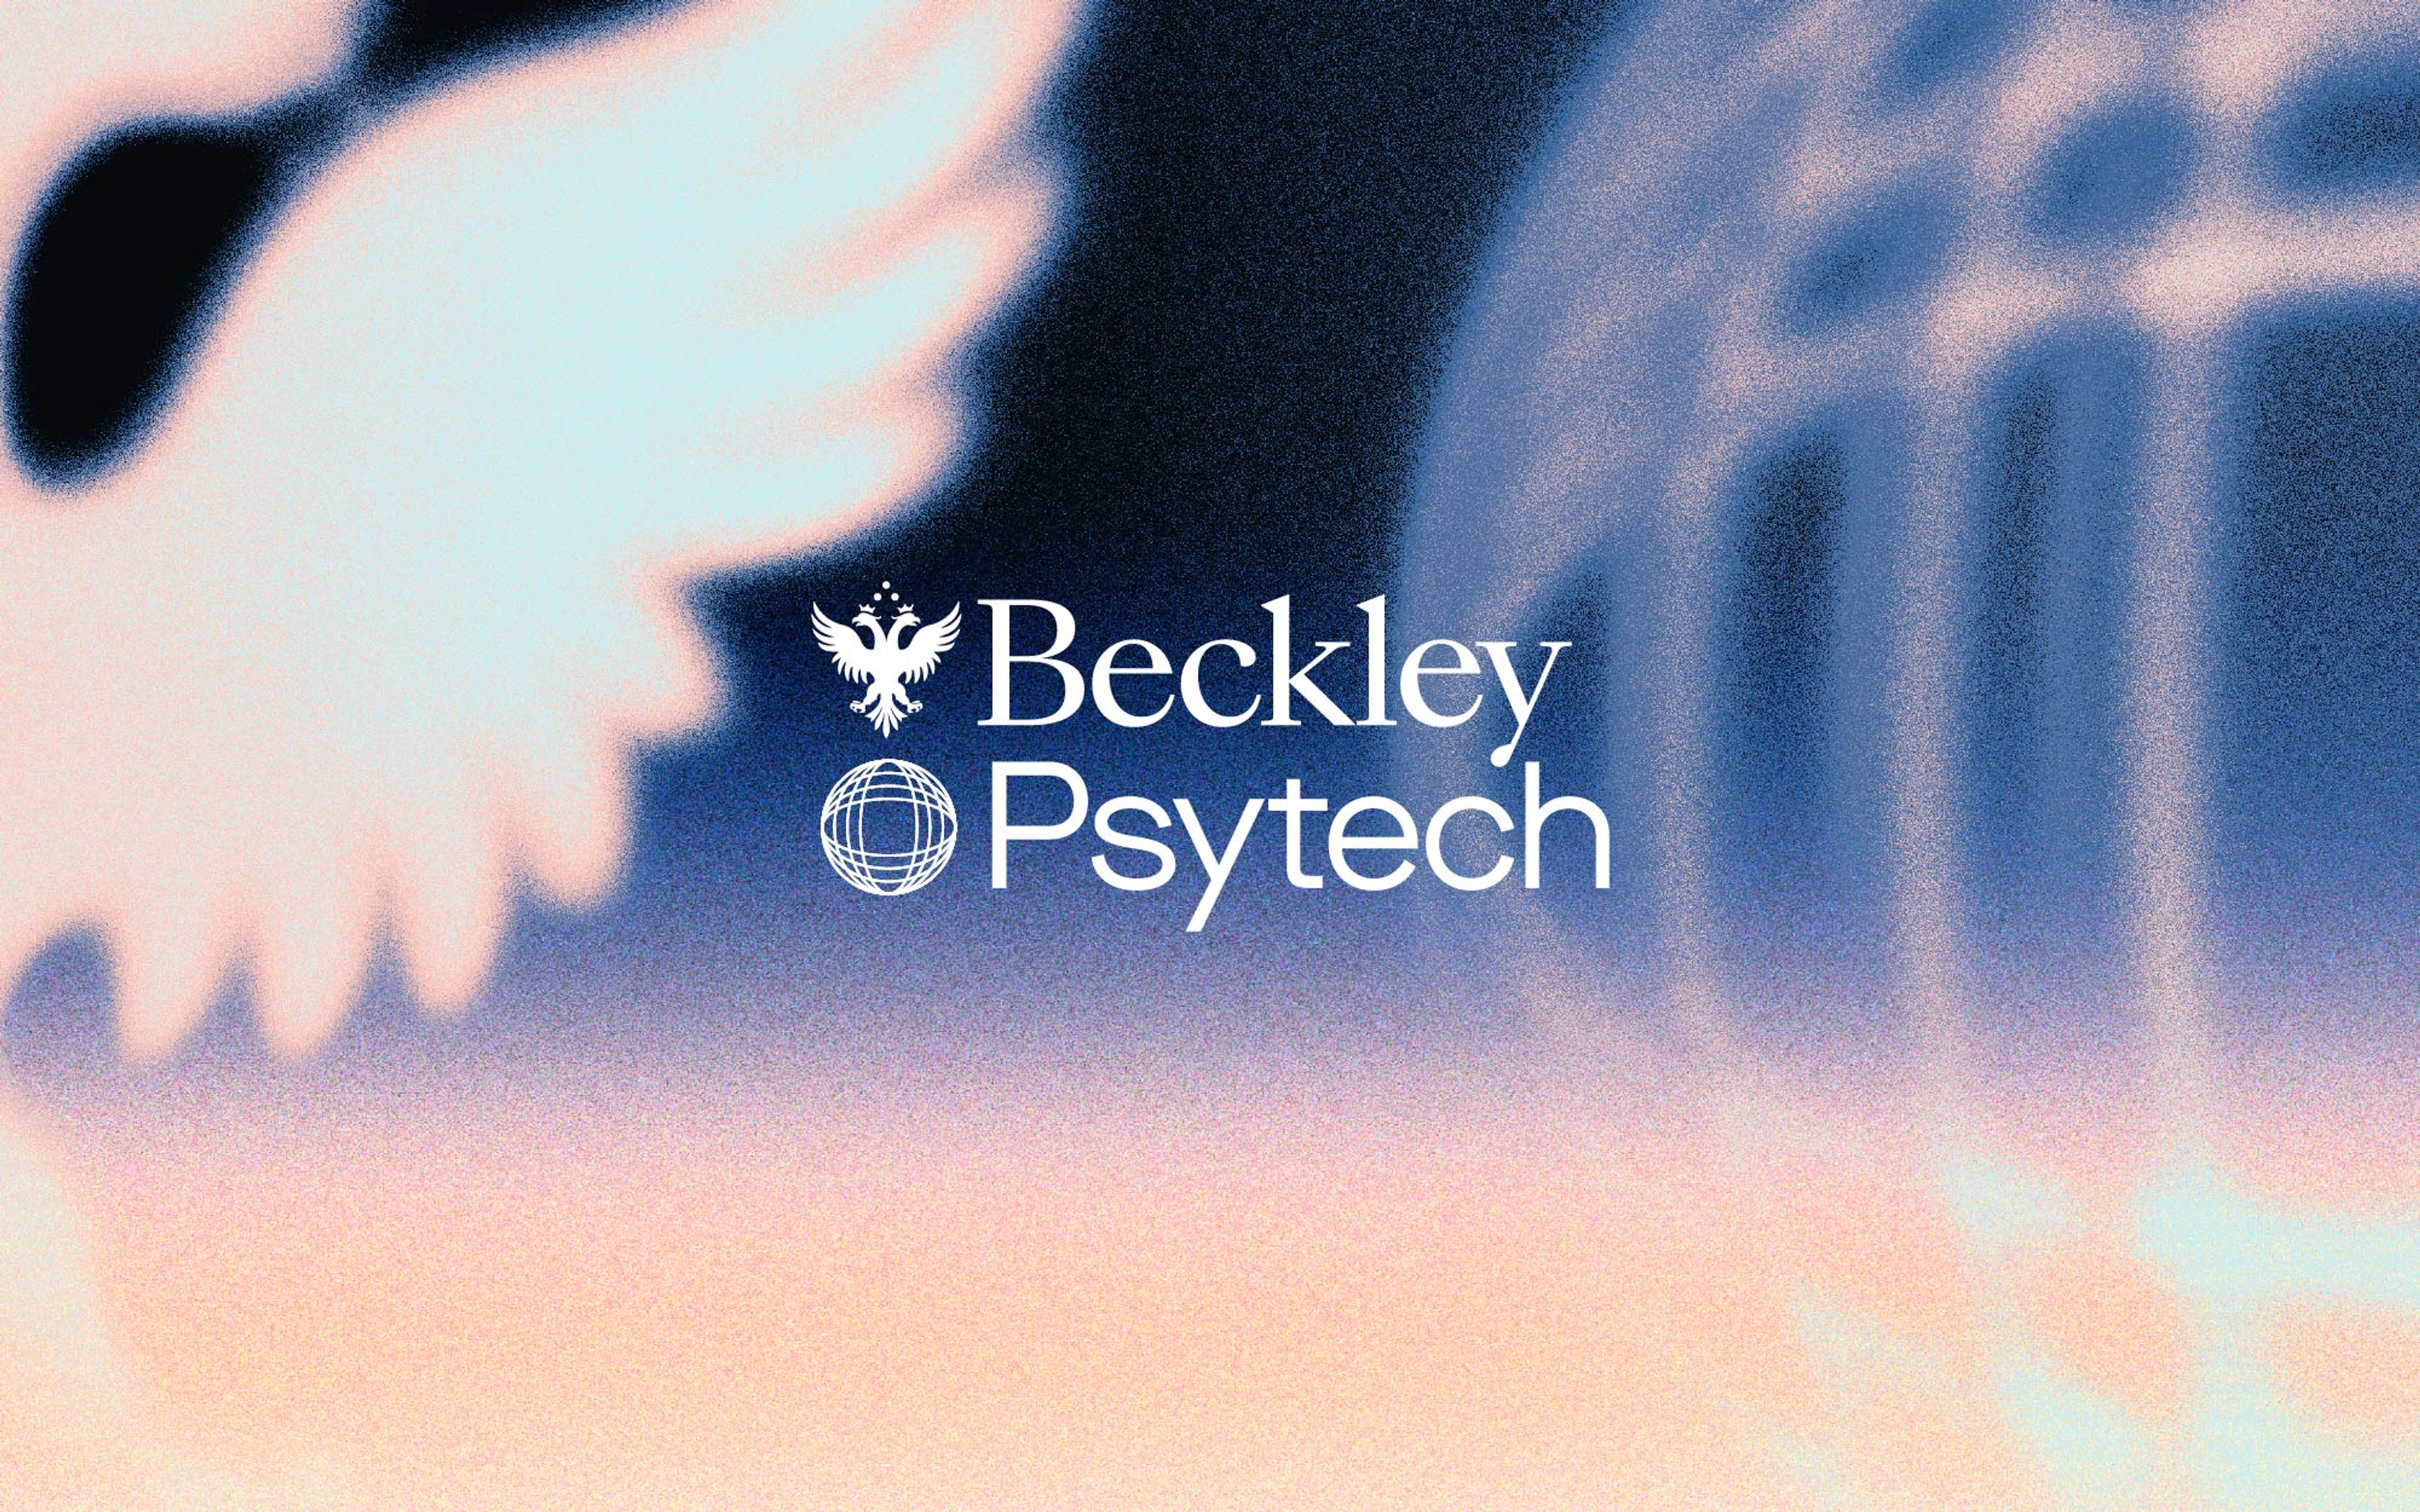 Beckley Psytech